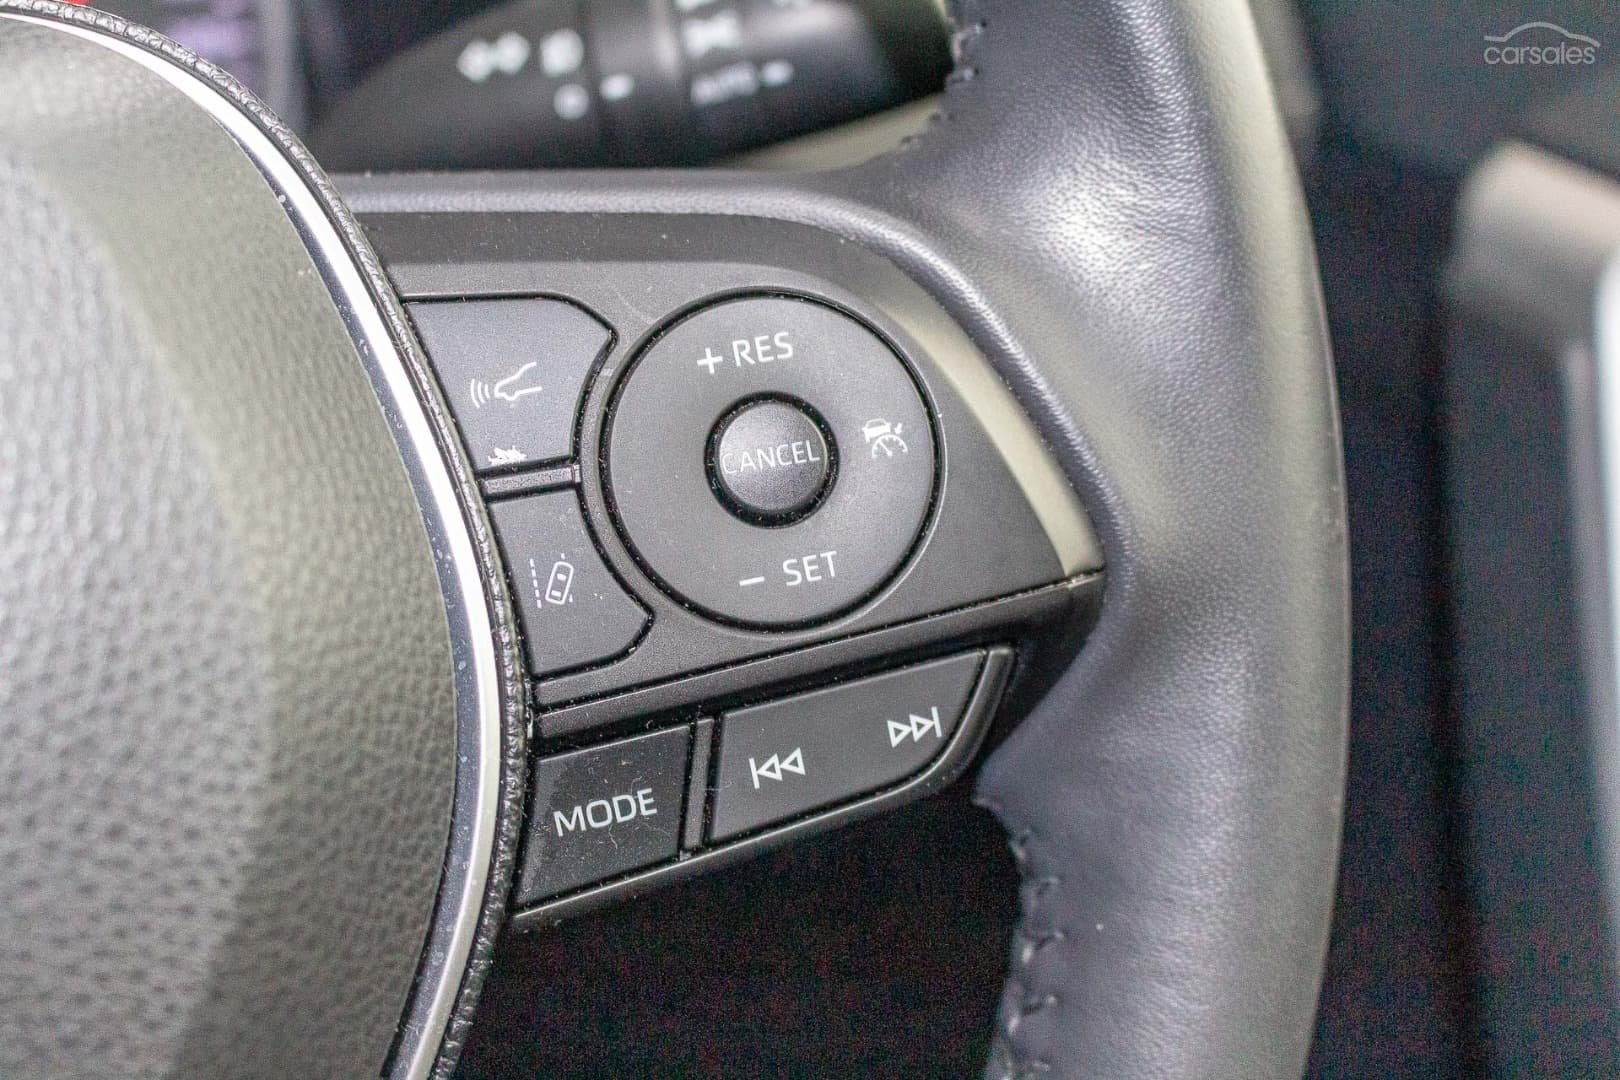 2019 Toyota RAV4 Image 17